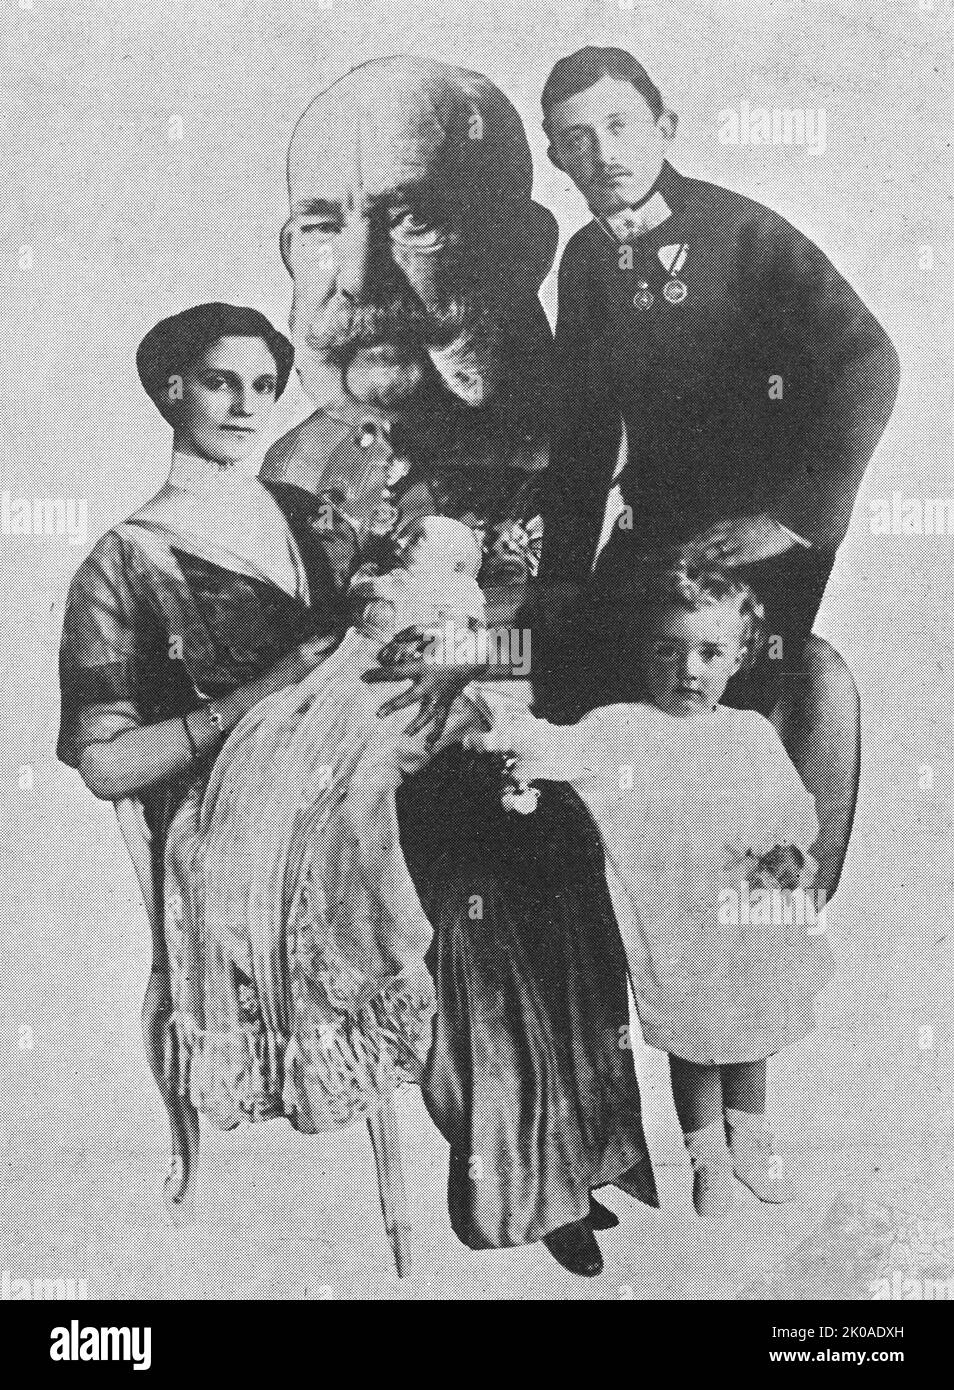 Famiglia reale di Austria e Ungheria. Imperatore Francesco Giuseppe con il futuro imperatore Carlo i con sua moglie Zita e figli, 1914 Foto Stock